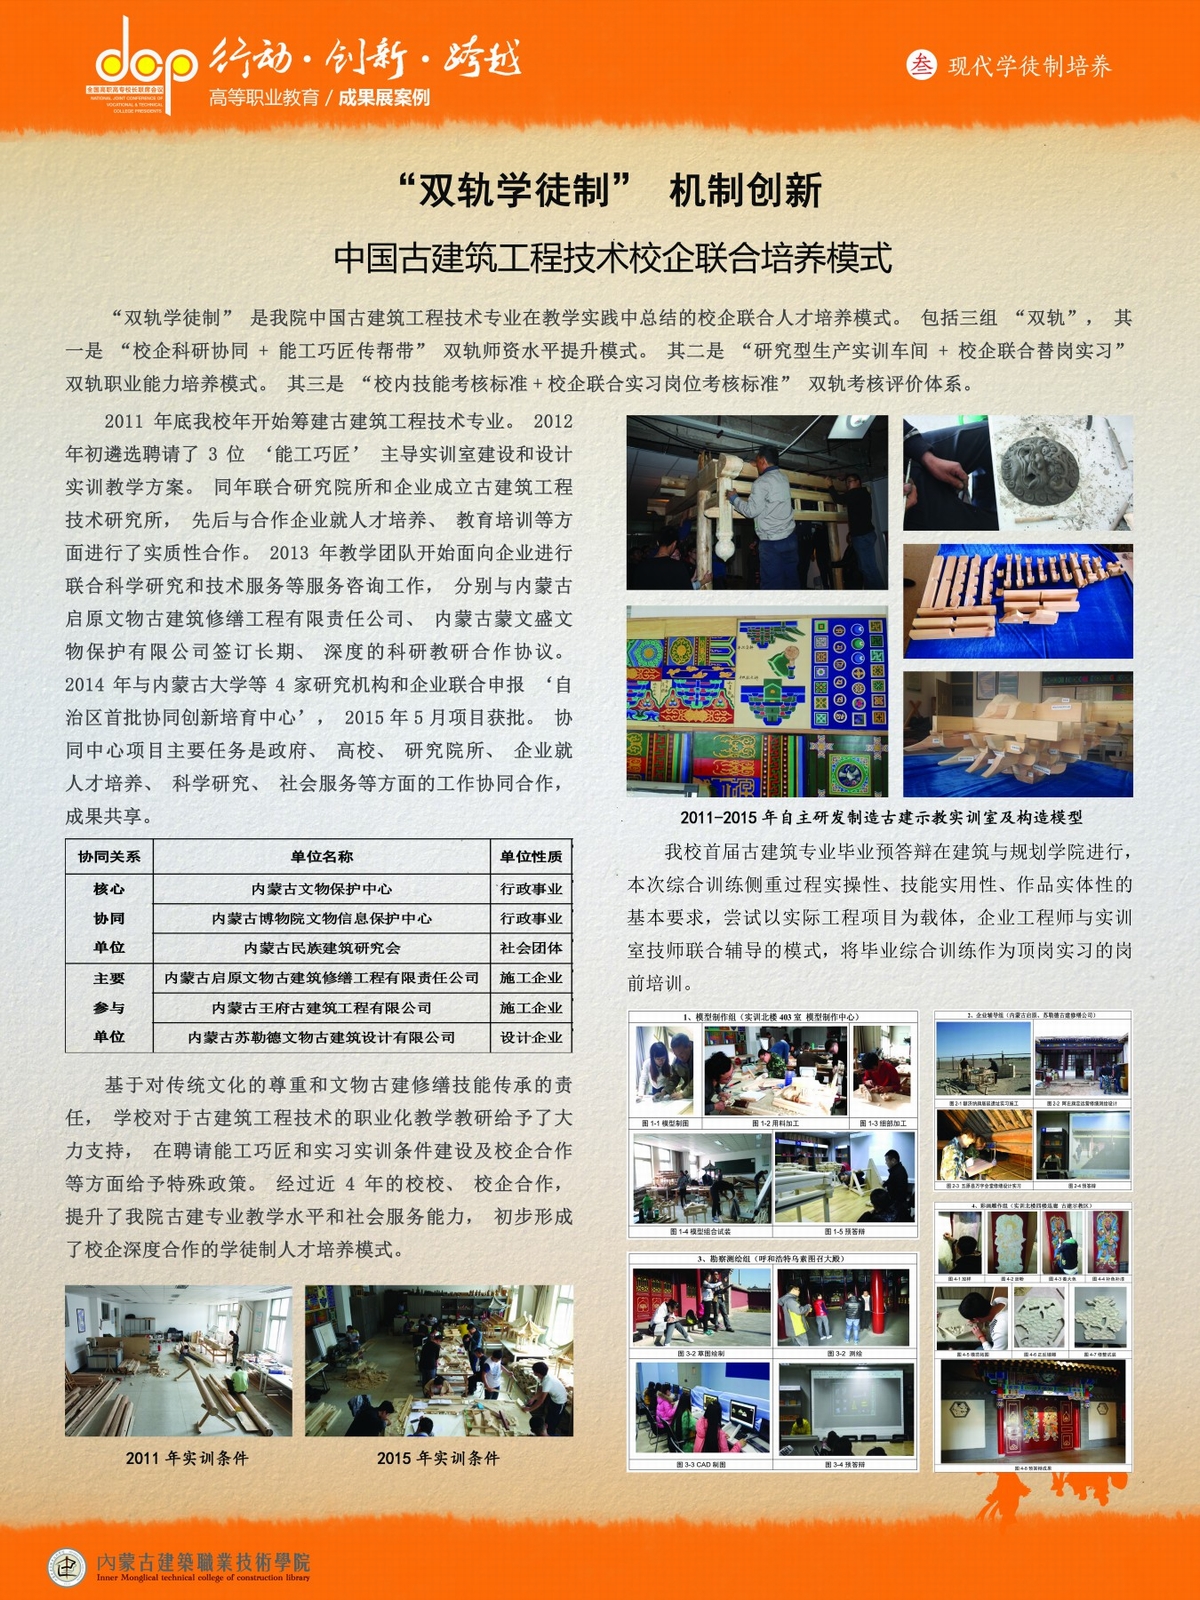 内蒙古建筑职业技术学院+宣传展板+双轨学徒制机制创新.jpg